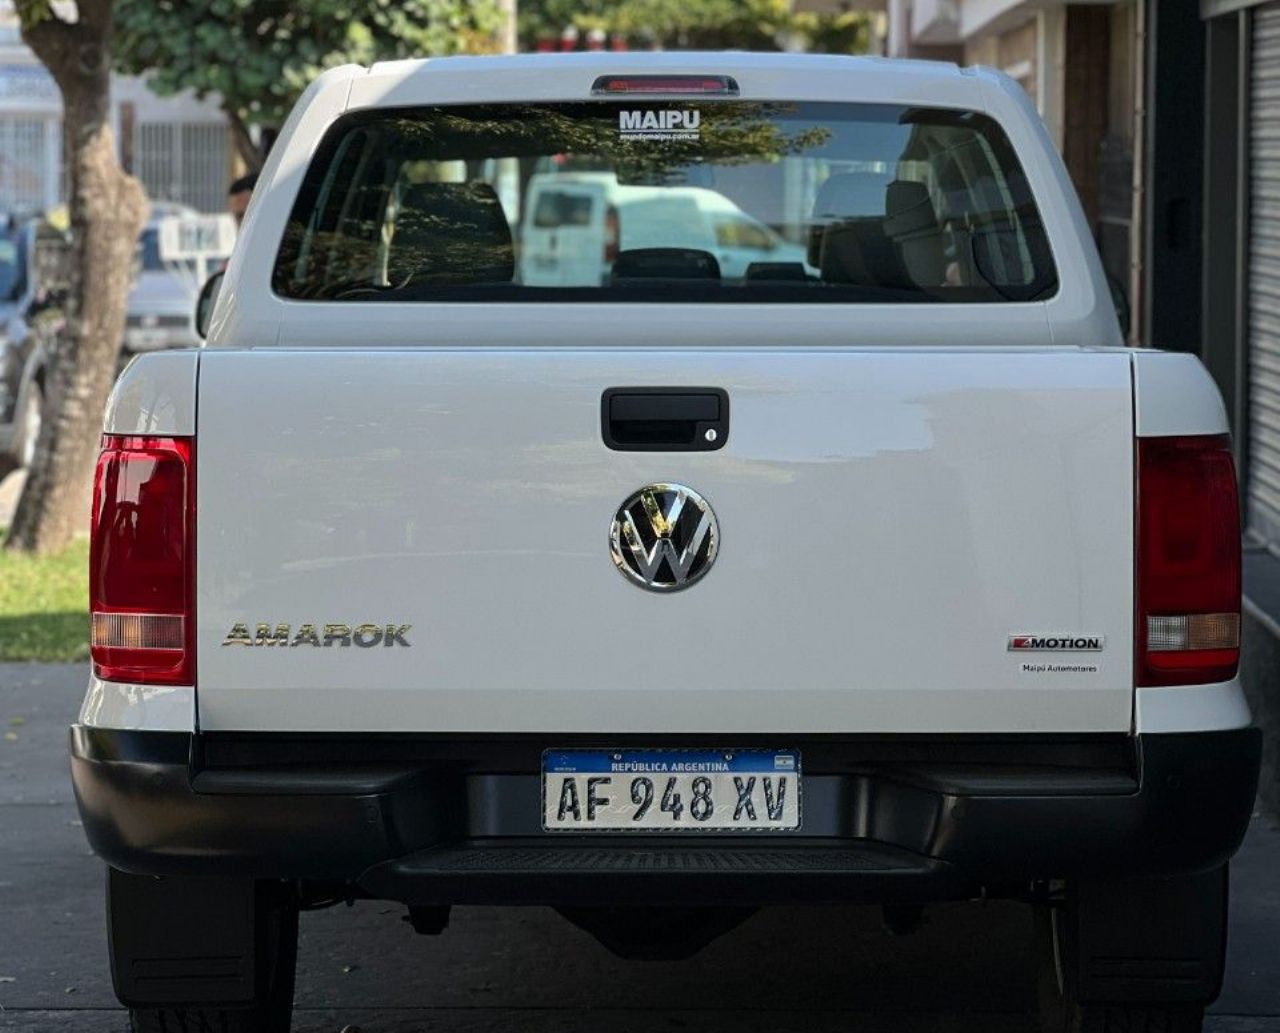 Volkswagen Amarok Nueva en Córdoba, deRuedas